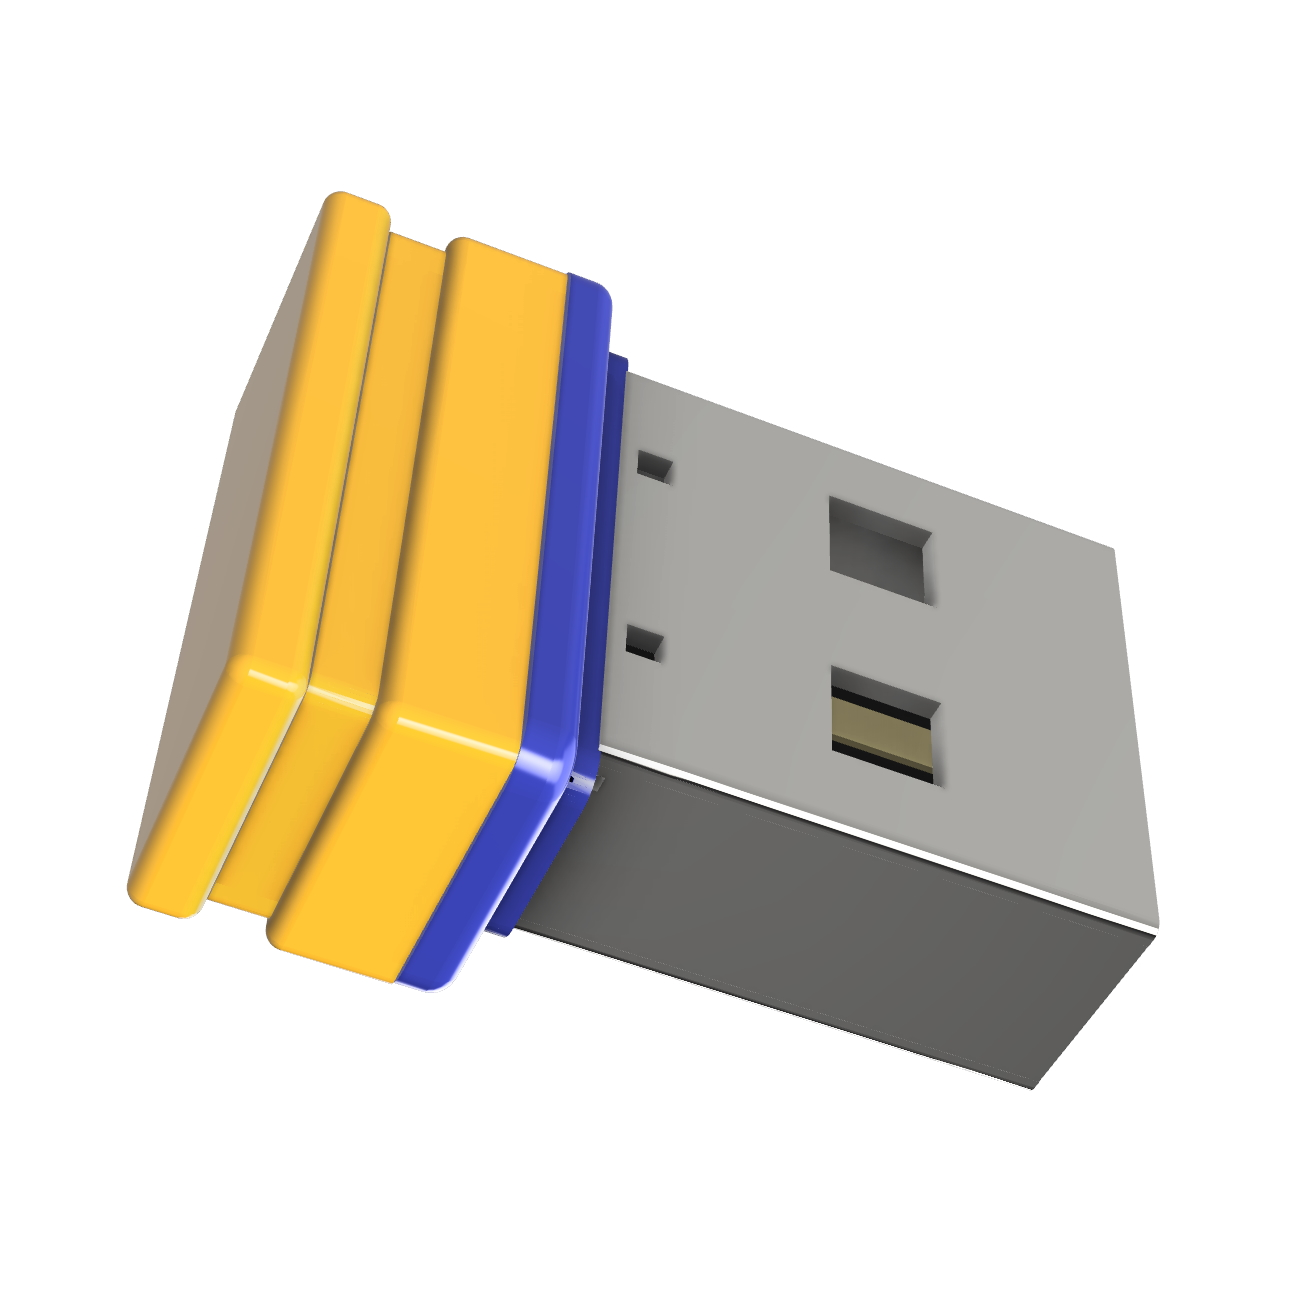 P1 GERMANY 4 (Gelb/Blau, Mini USB USB-Stick ®ULTRA GB)